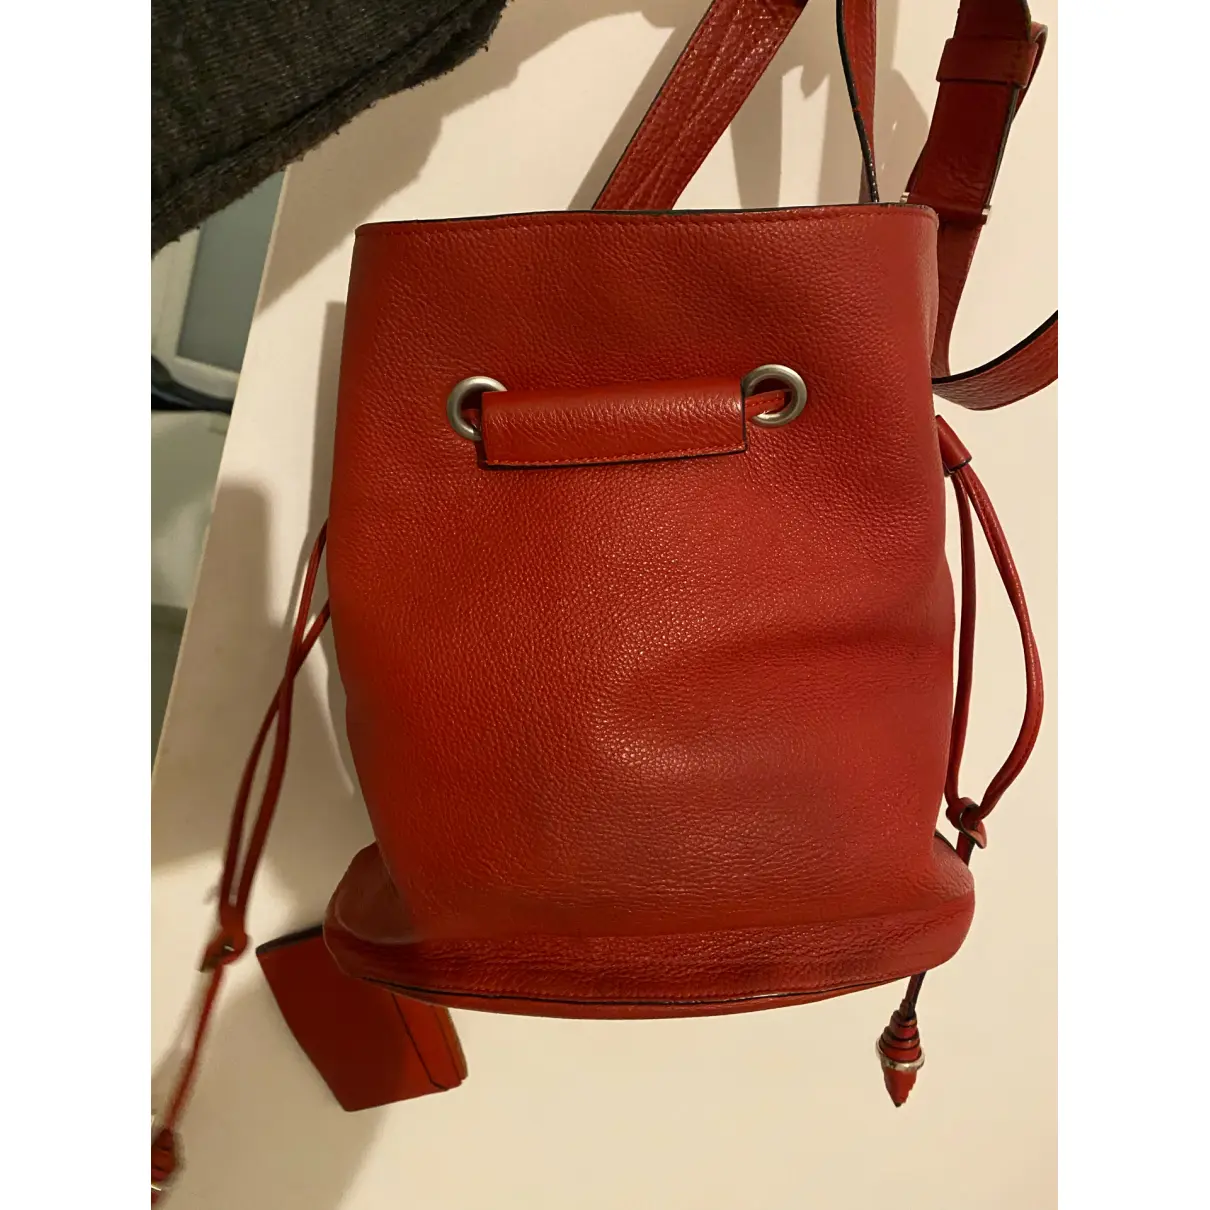 Buy Lancel Huit leather handbag online